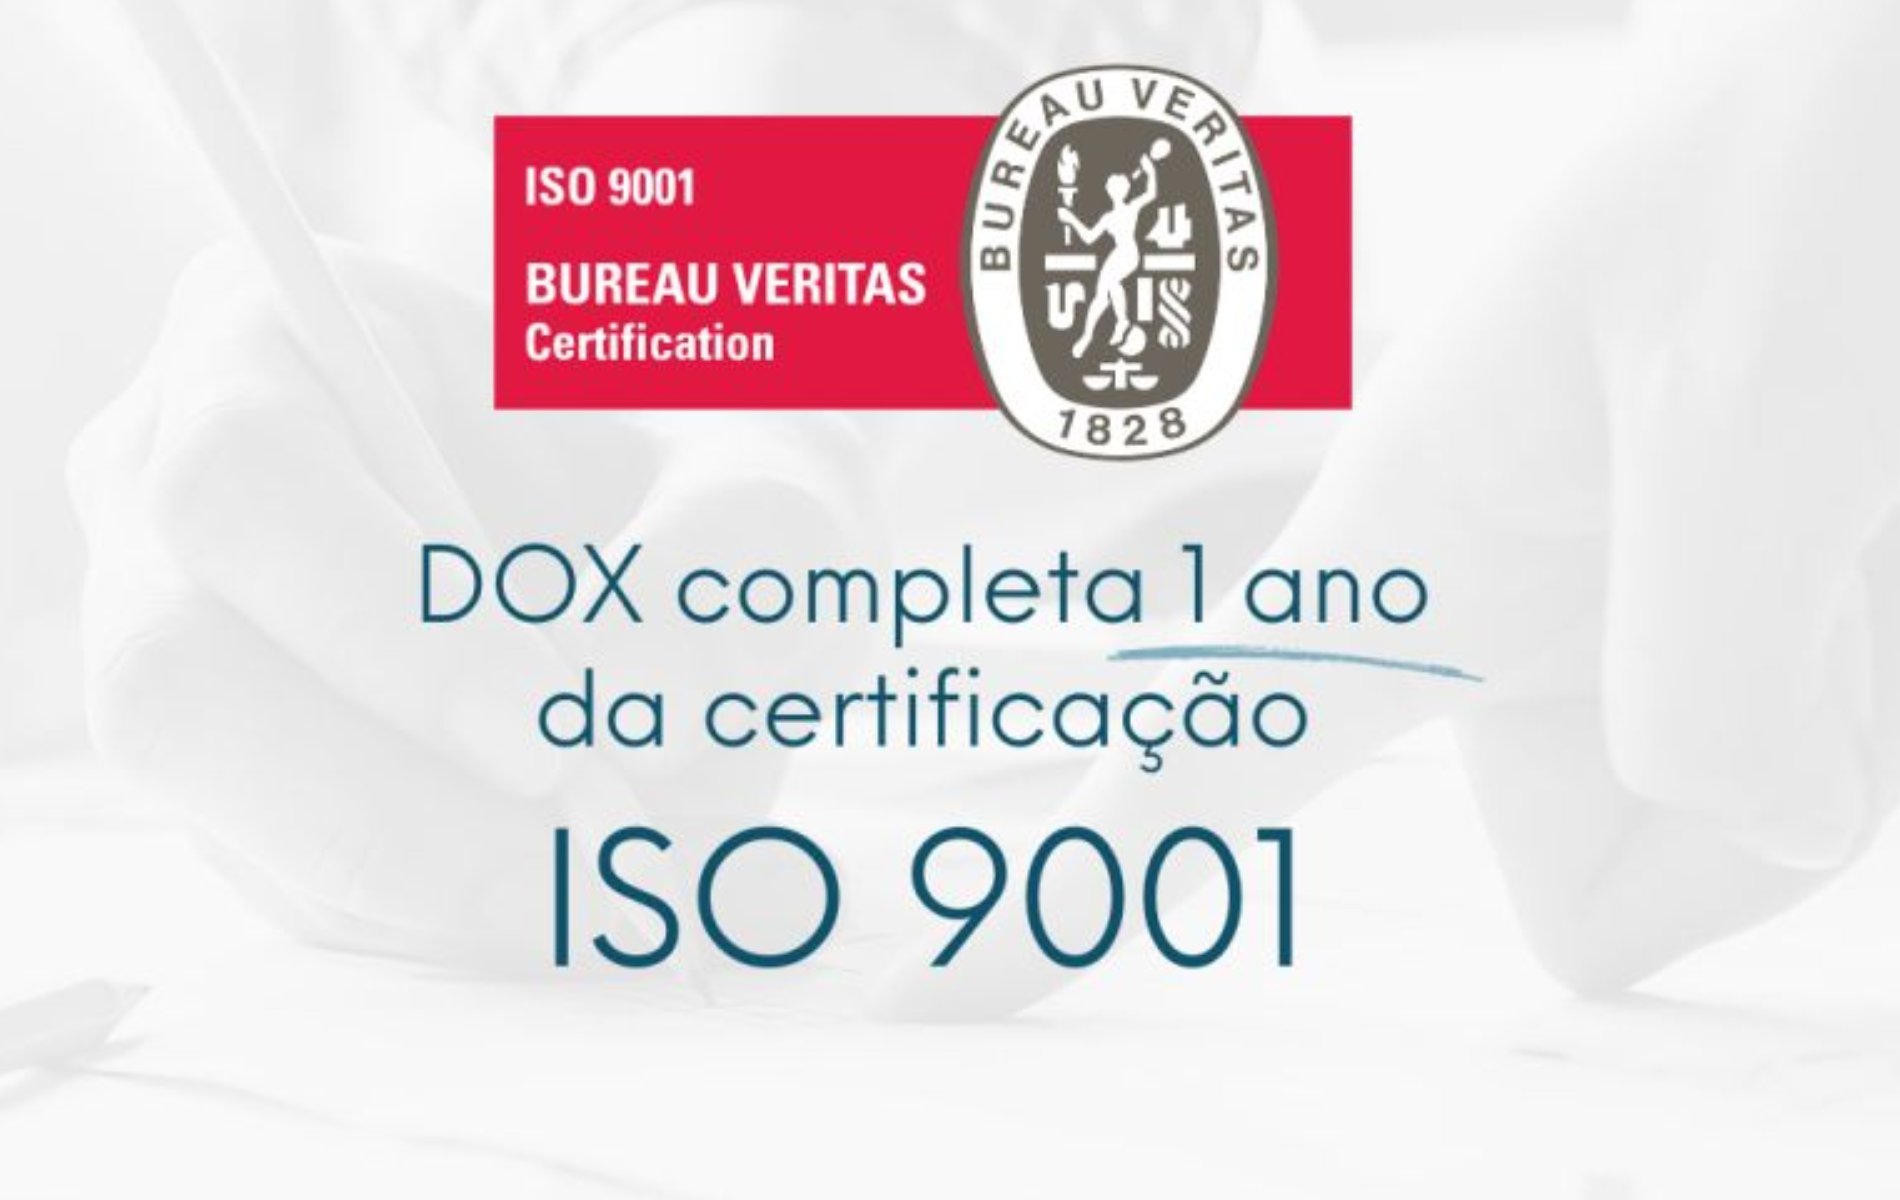 DOX completa 1 ano da certificação ISO 9001